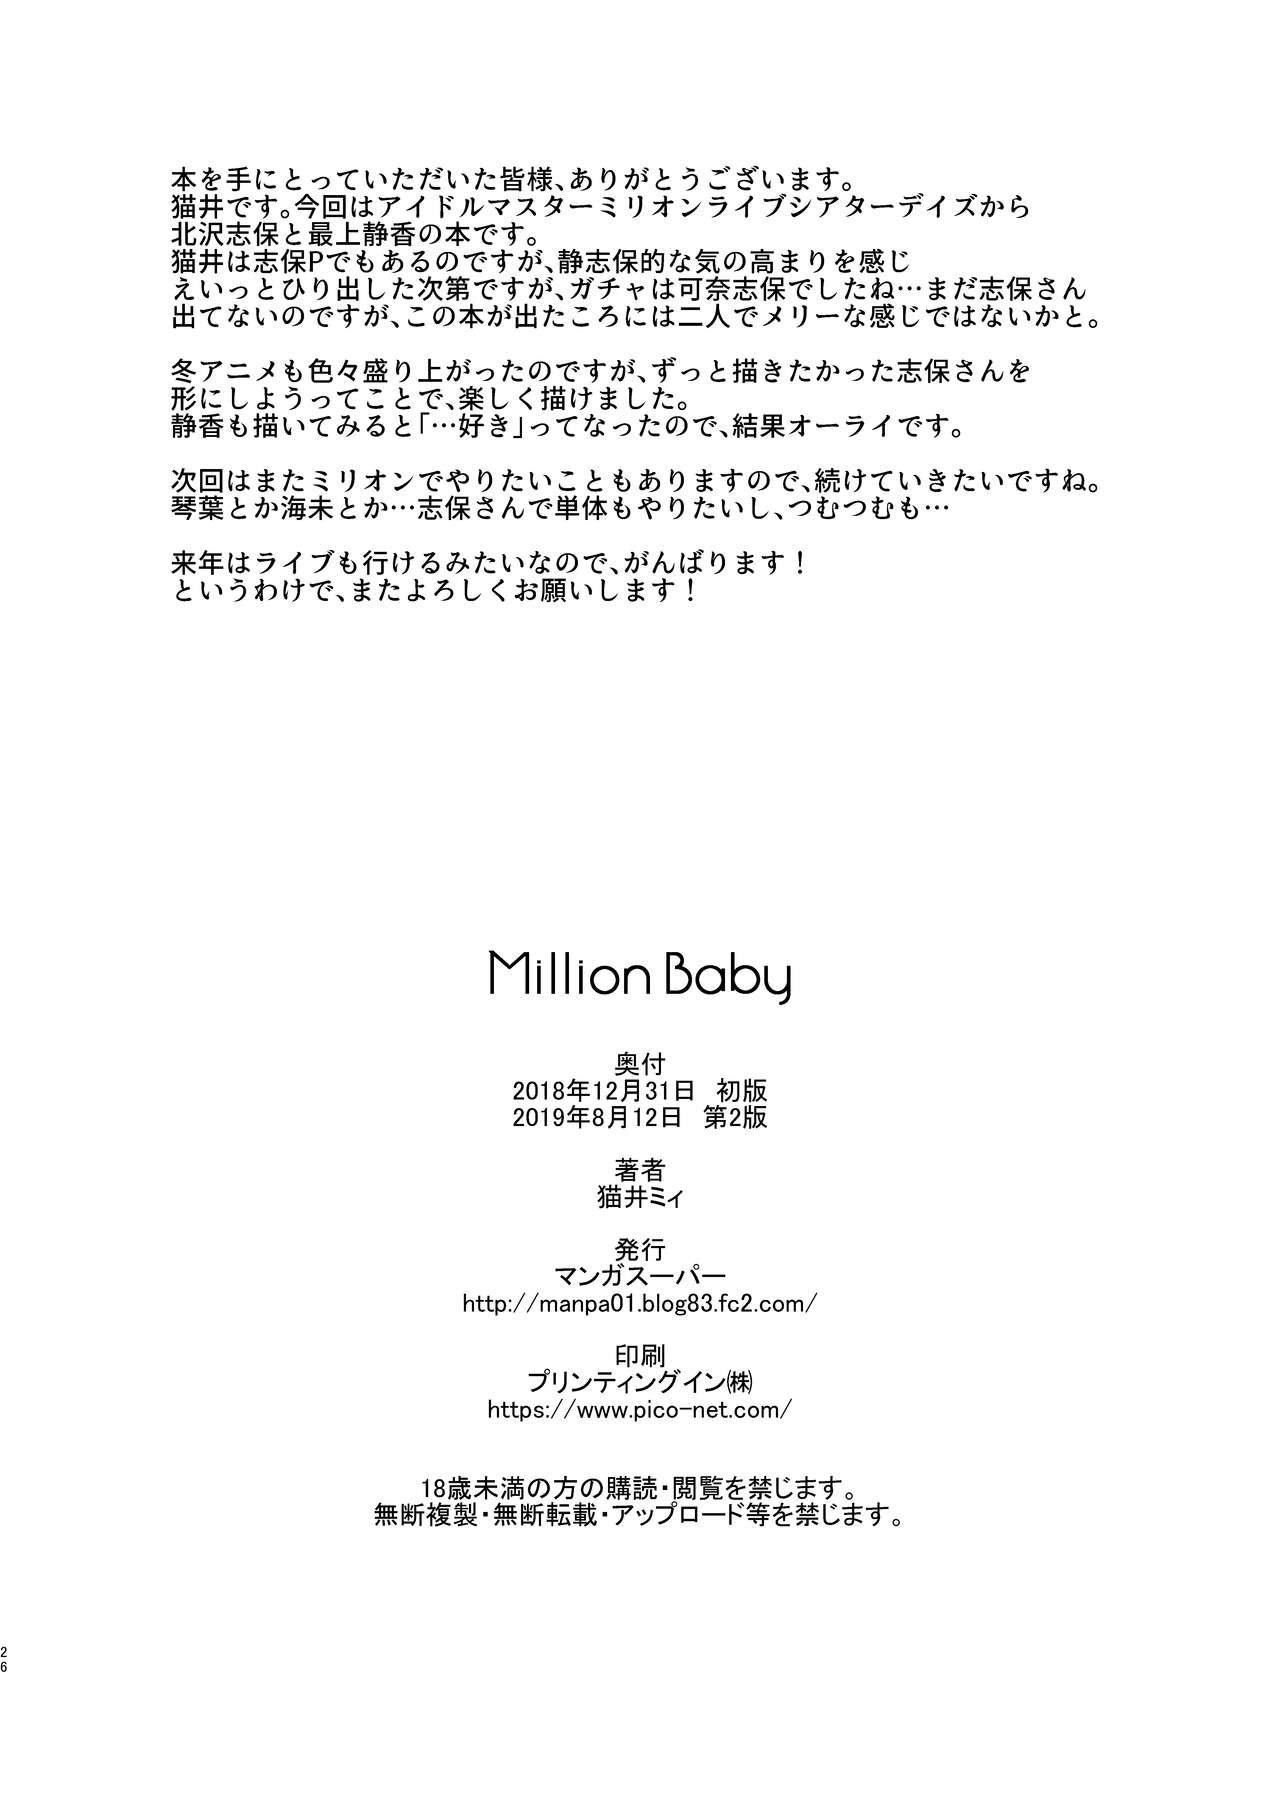 Million Baby - 24